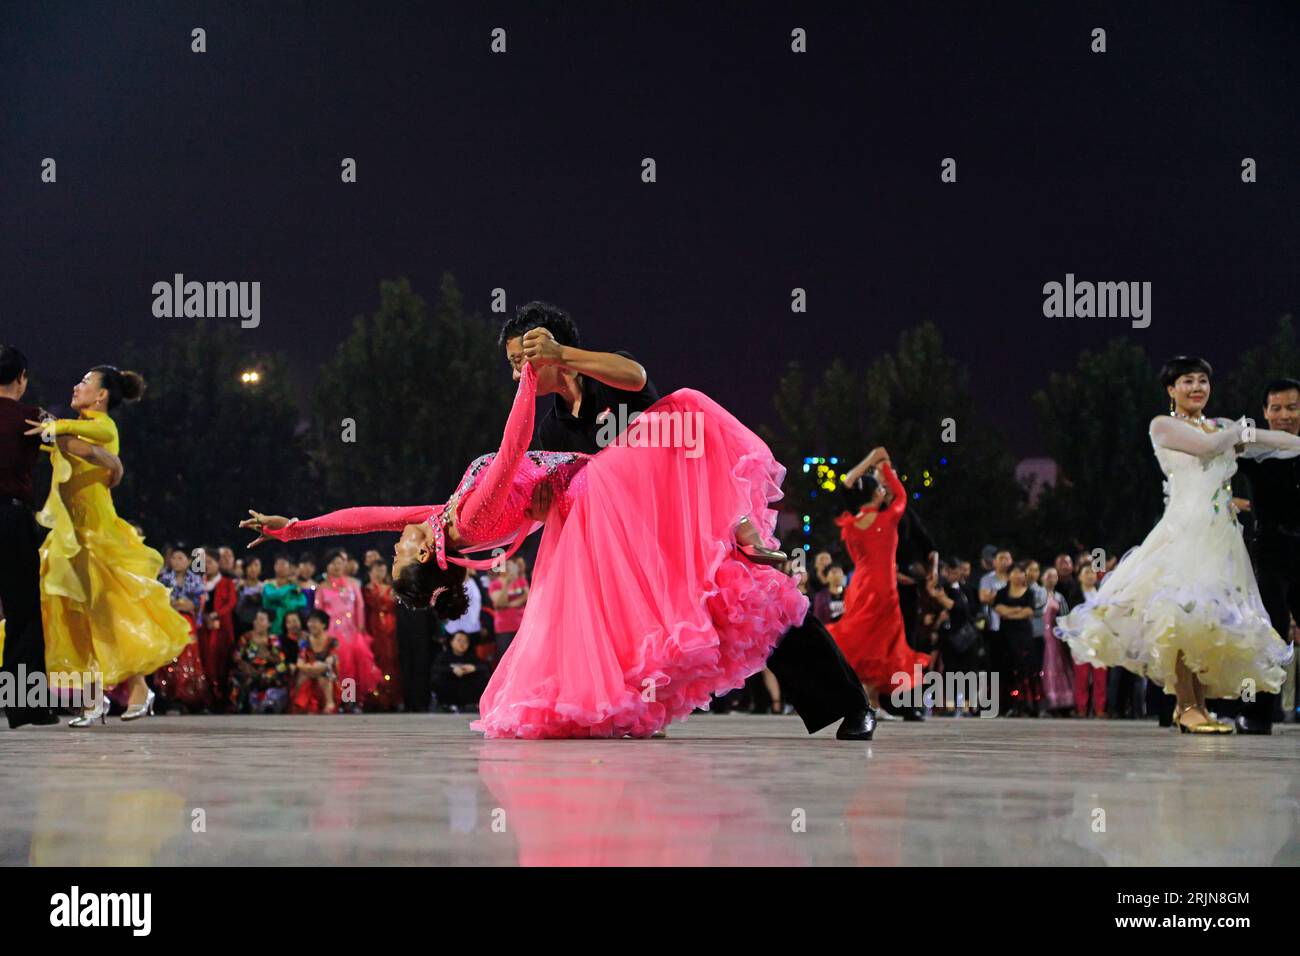 COMTÉ de LUANNAN, Chine - 20 septembre 2018 : spectacle de danse sociale sur la place la nuit, COMTÉ de LUANNAN, province du Hebei, Chine Banque D'Images